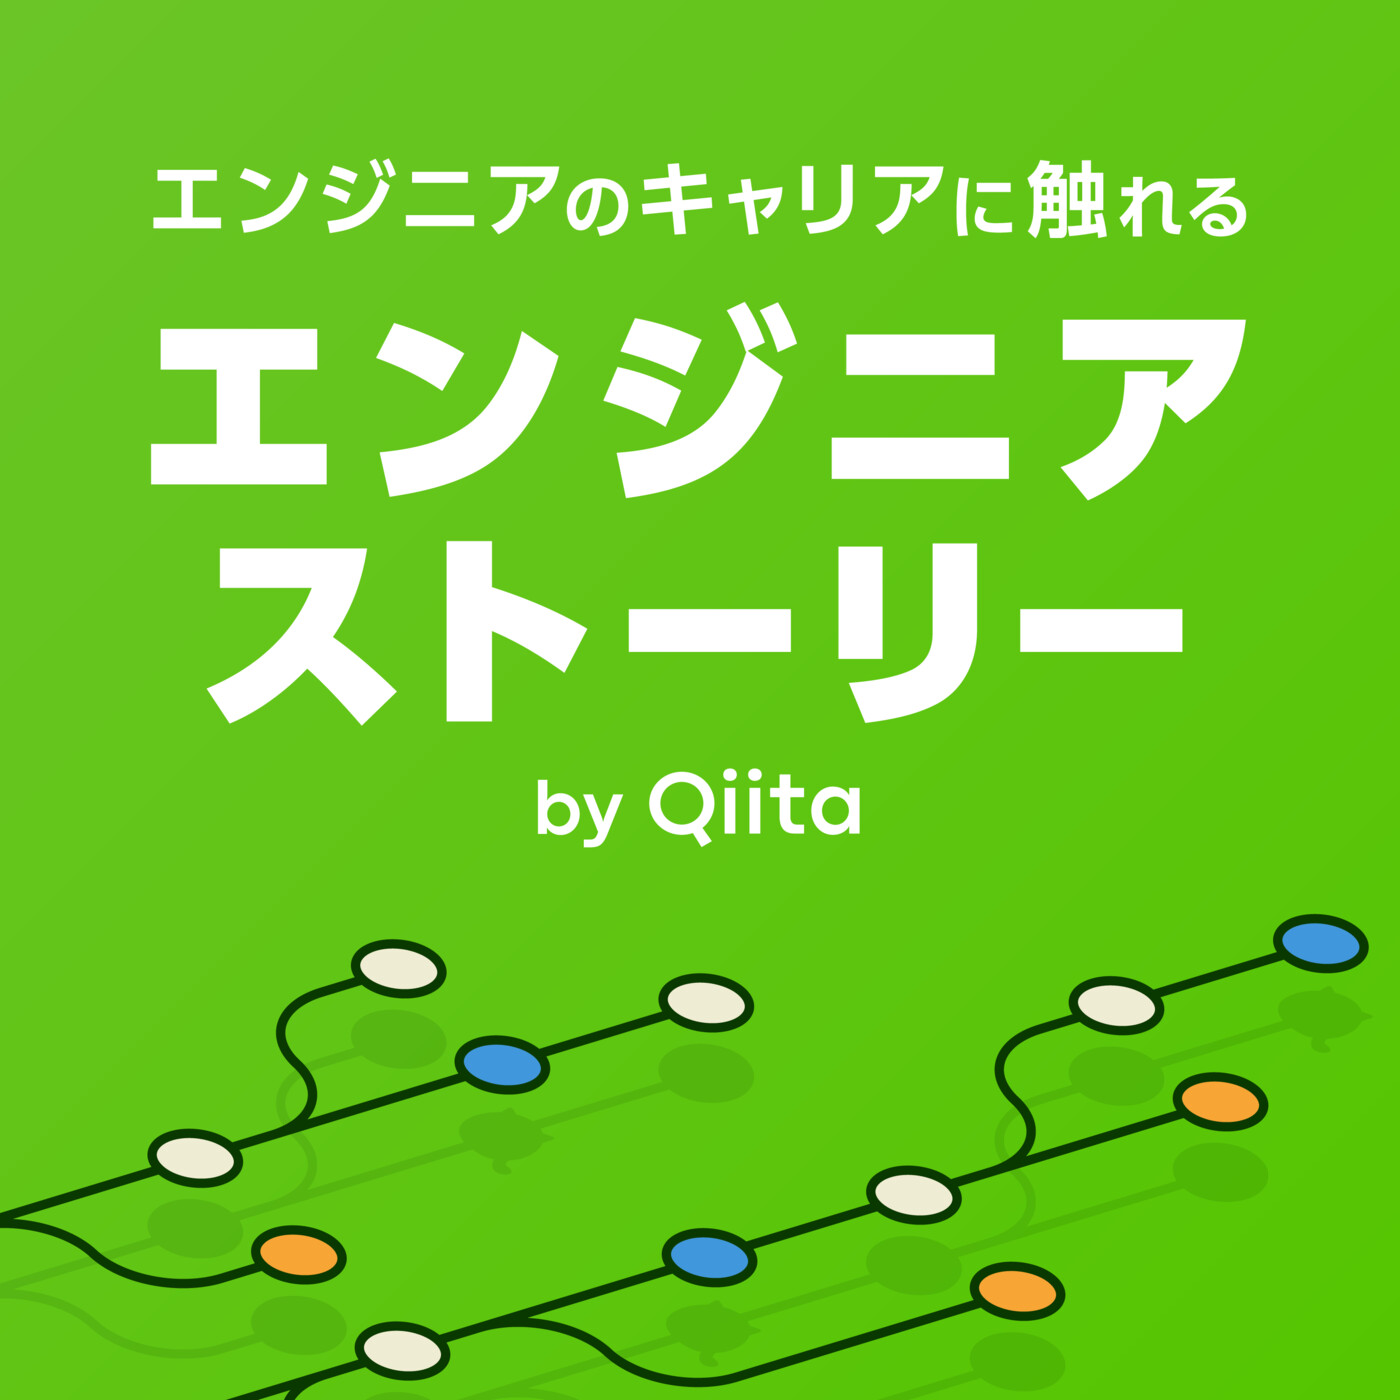 エンジニアストーリー by Qiita